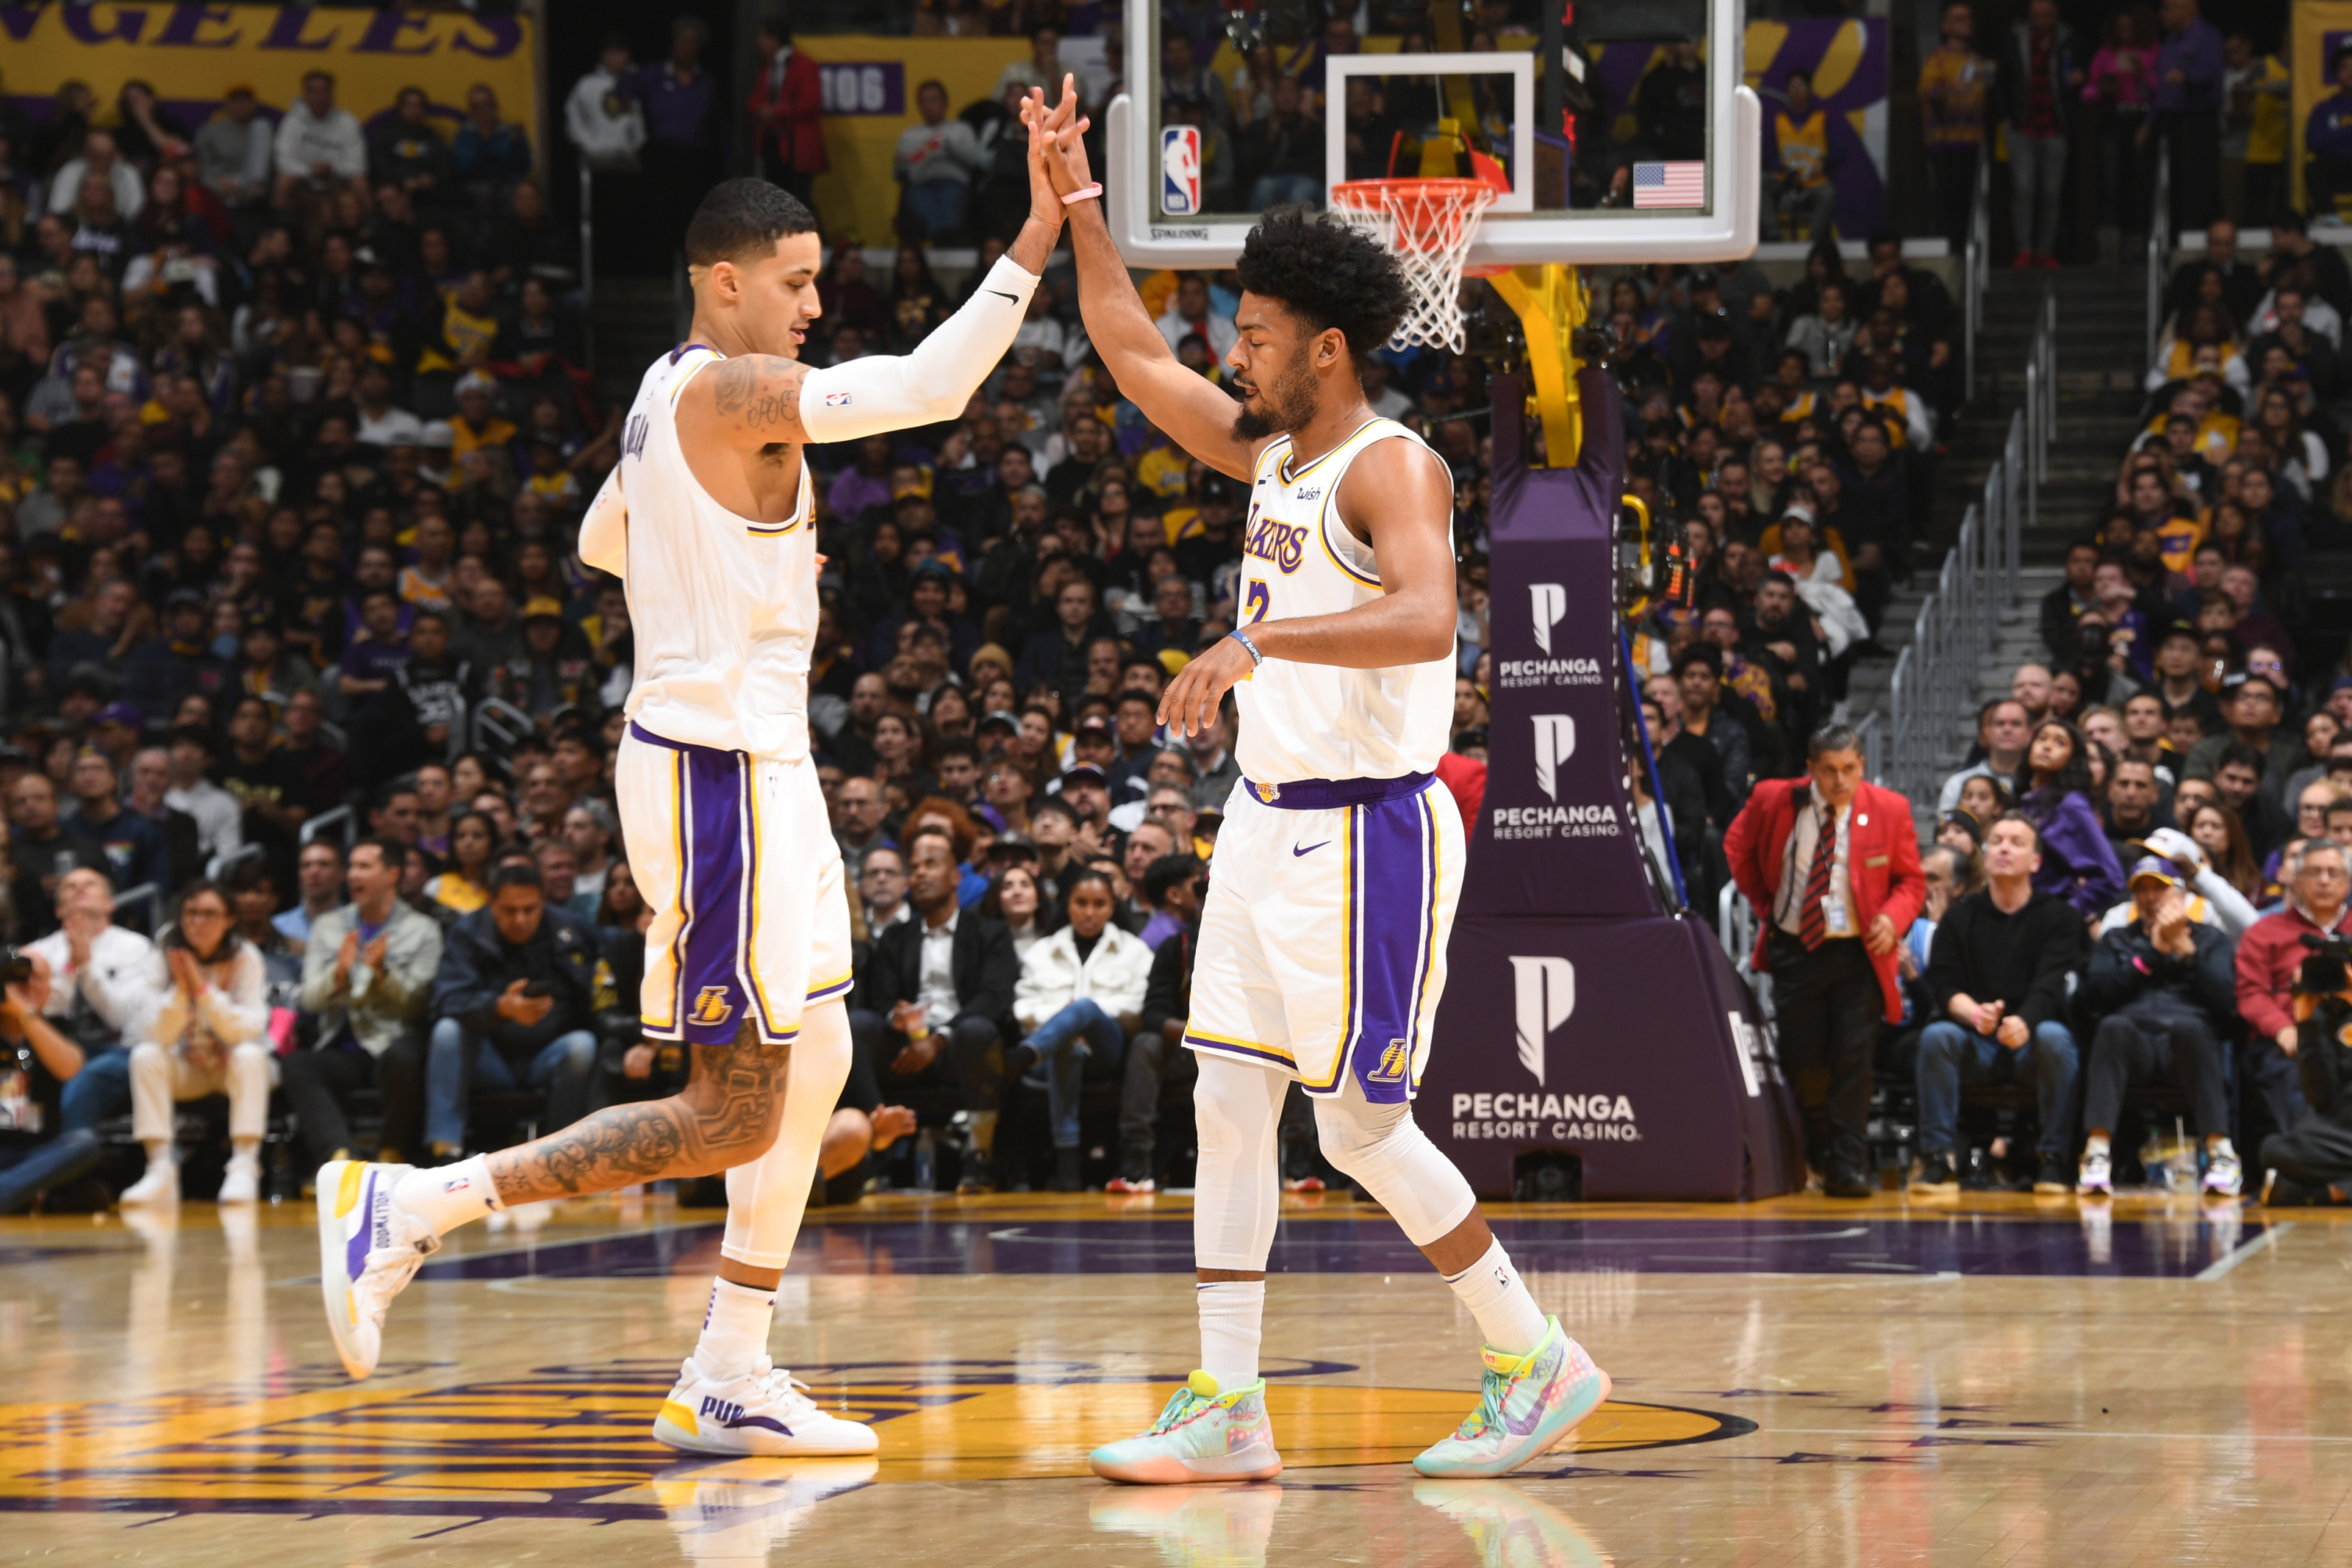 NBA: Why did Los Angeles Lakers' Kyle Kuzma tweet at halftime of game?